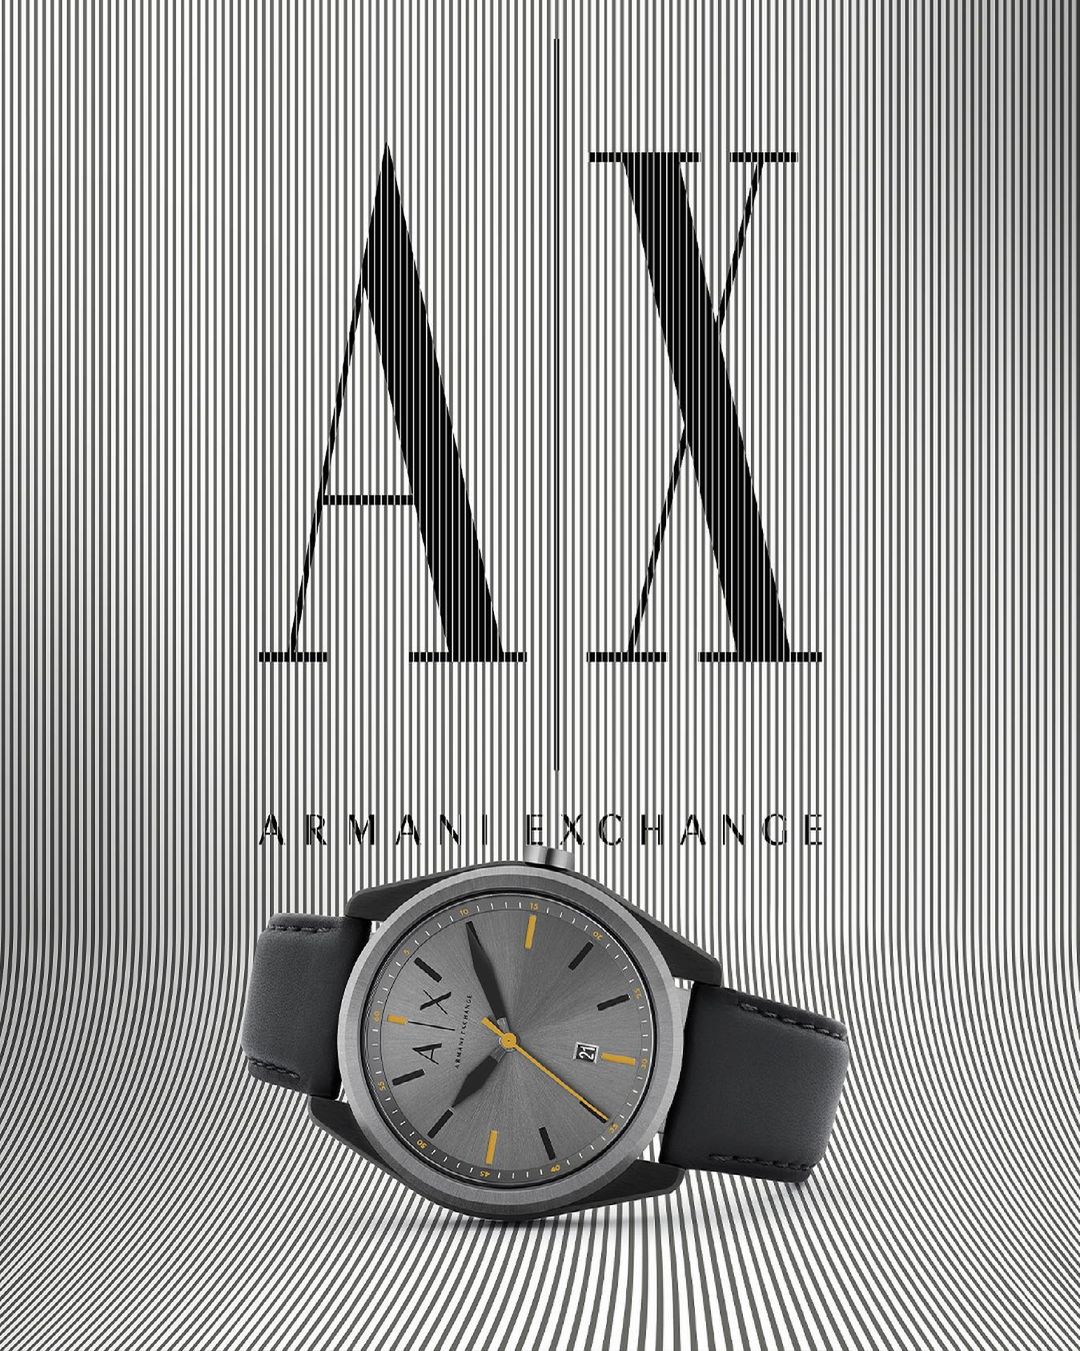 La relojería como accesorio básico de temporada gracias a Armani Exchange